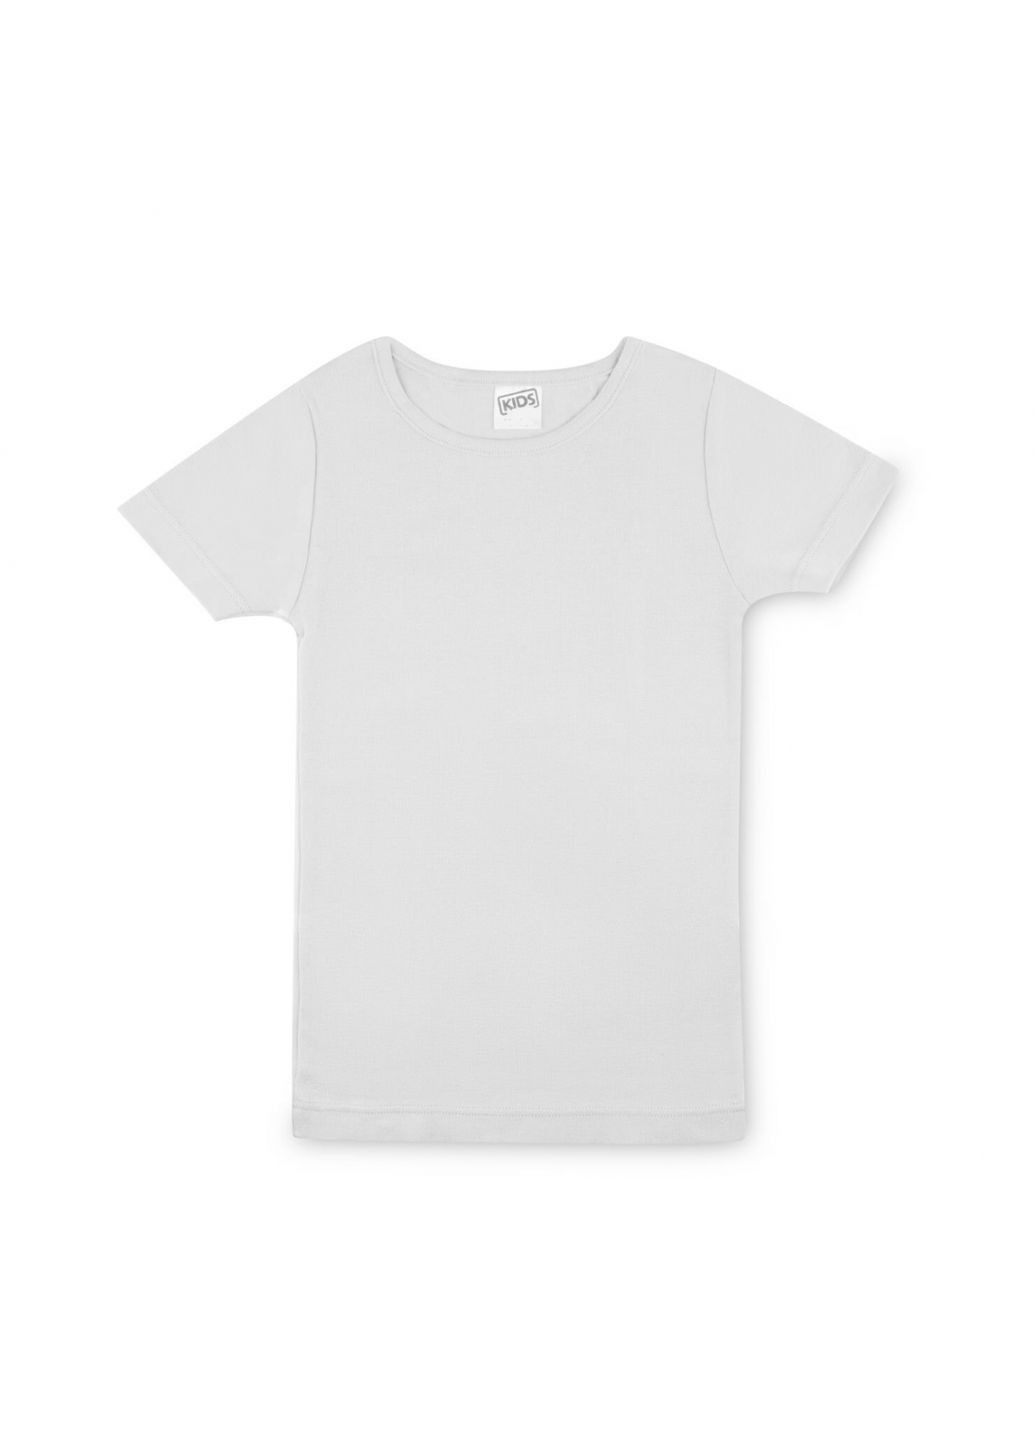 Комбинированная демисезонная футболка набор 2шт. хлопковые для мальчика 15866580 белый, серый Migros